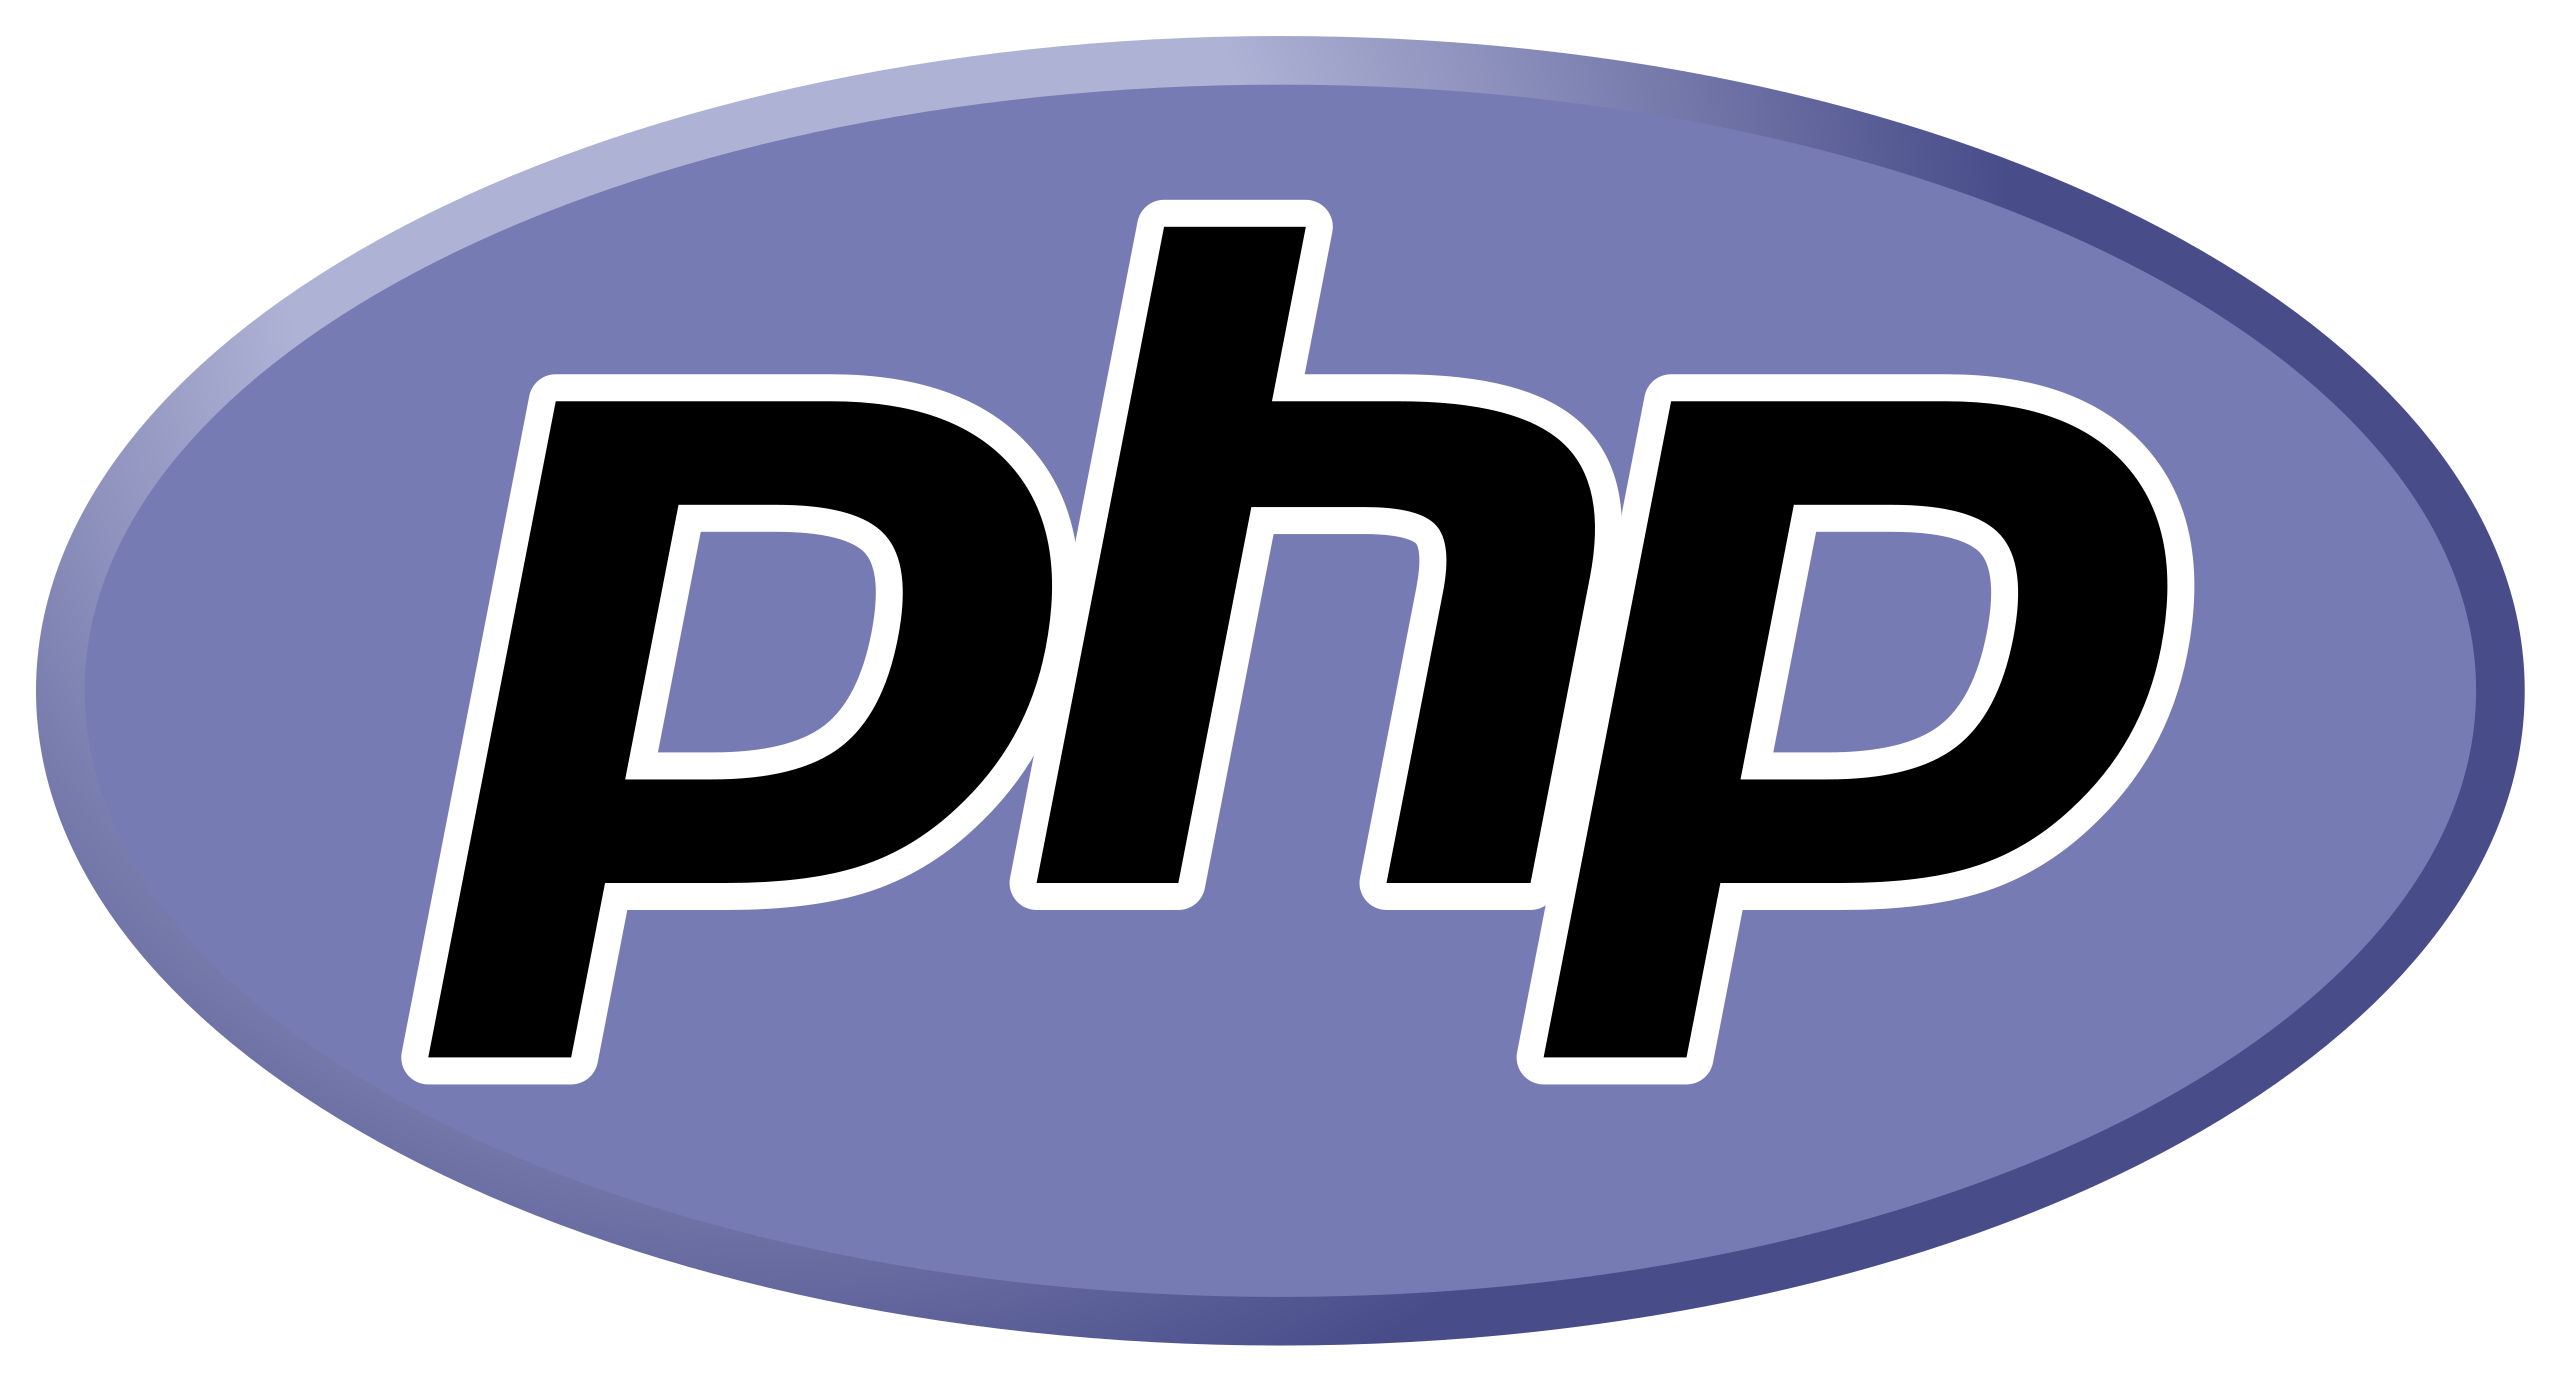 Senior PHP/Laravel Developer